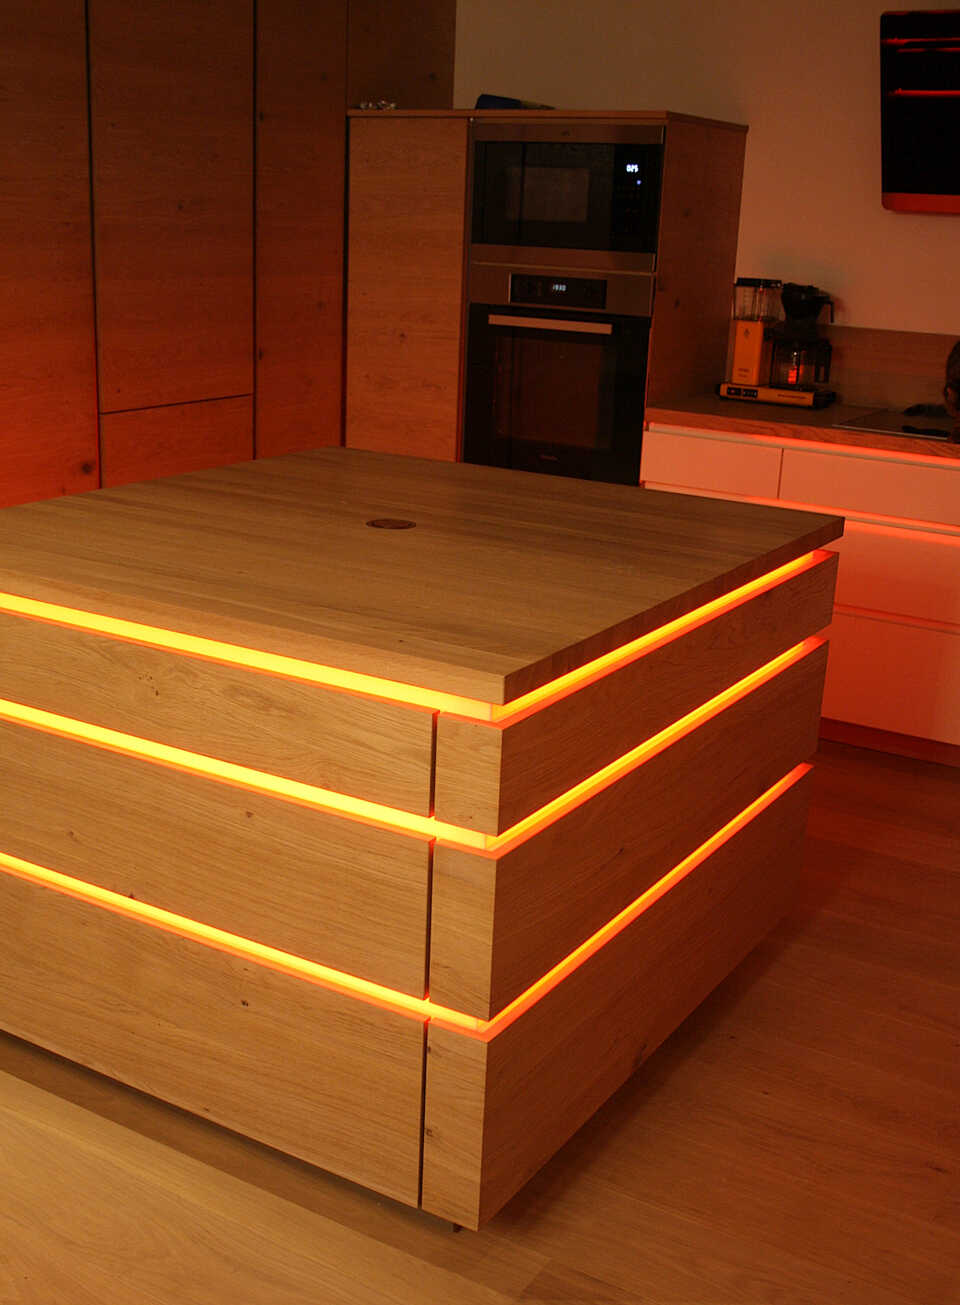 Küchenblock mit Leuchtelementen in gelb / orange und geschlossenen Schubladen.